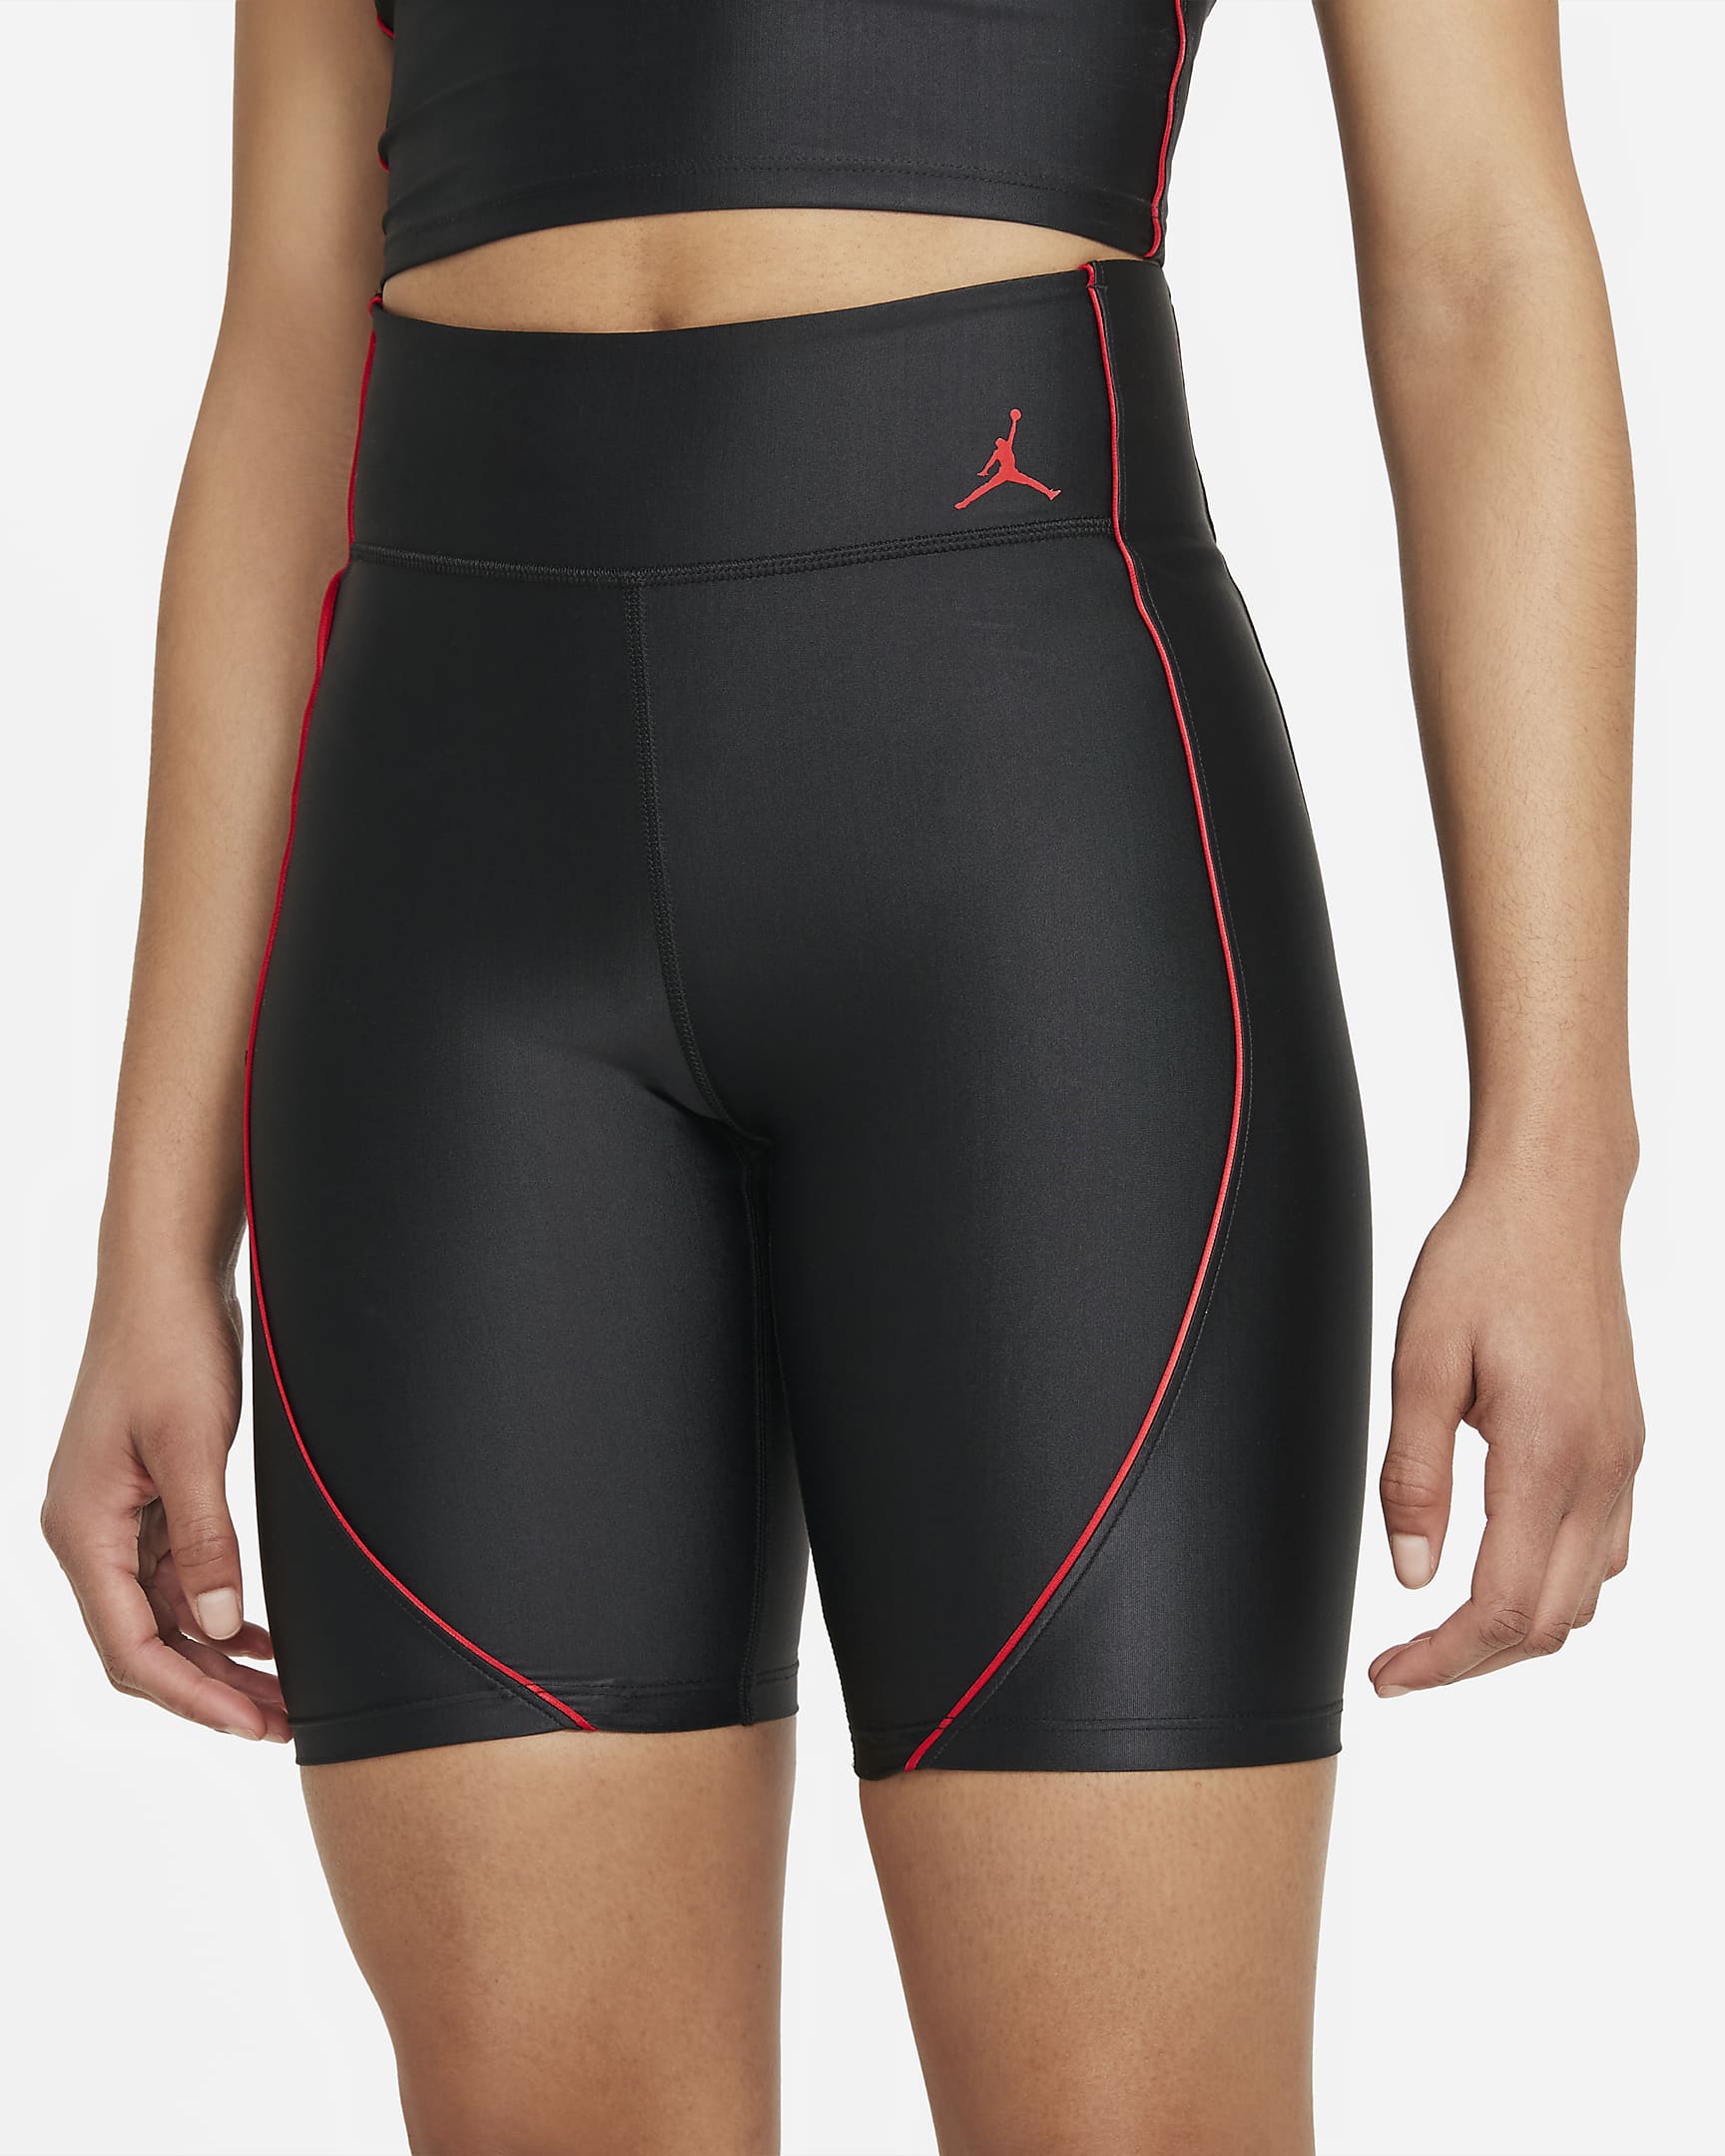 jordan-essentials-womens-mid-rise-bike-shorts-wMnJbl.png